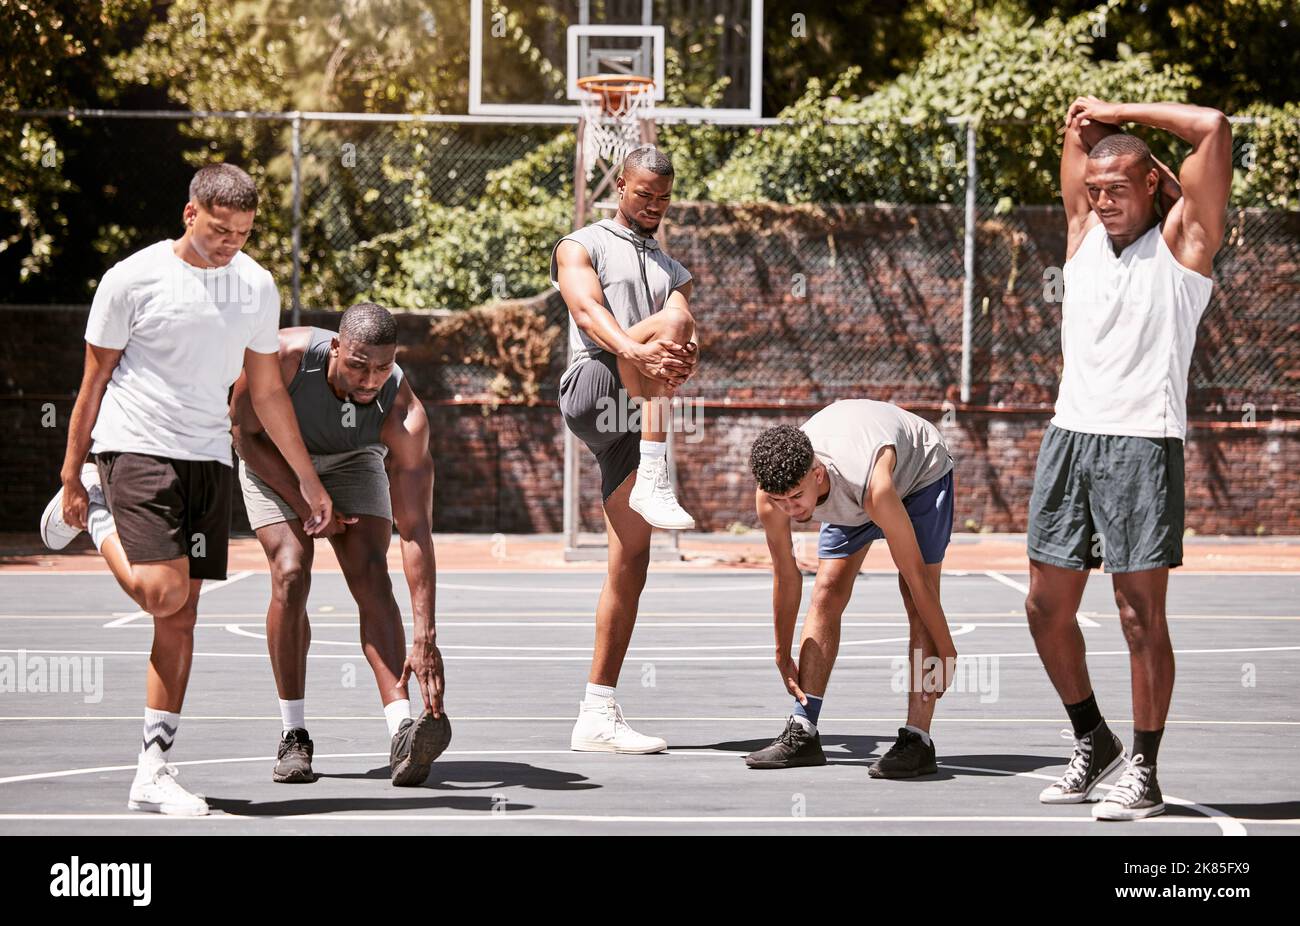 Hombres de fitness, ejercicio y baloncesto estirando o entrenando su cuerpo  en una cancha deportiva. Los atletas masculinos de entrenamiento preparan  el calentamiento muscular antes de la práctica Fotografía de stock -